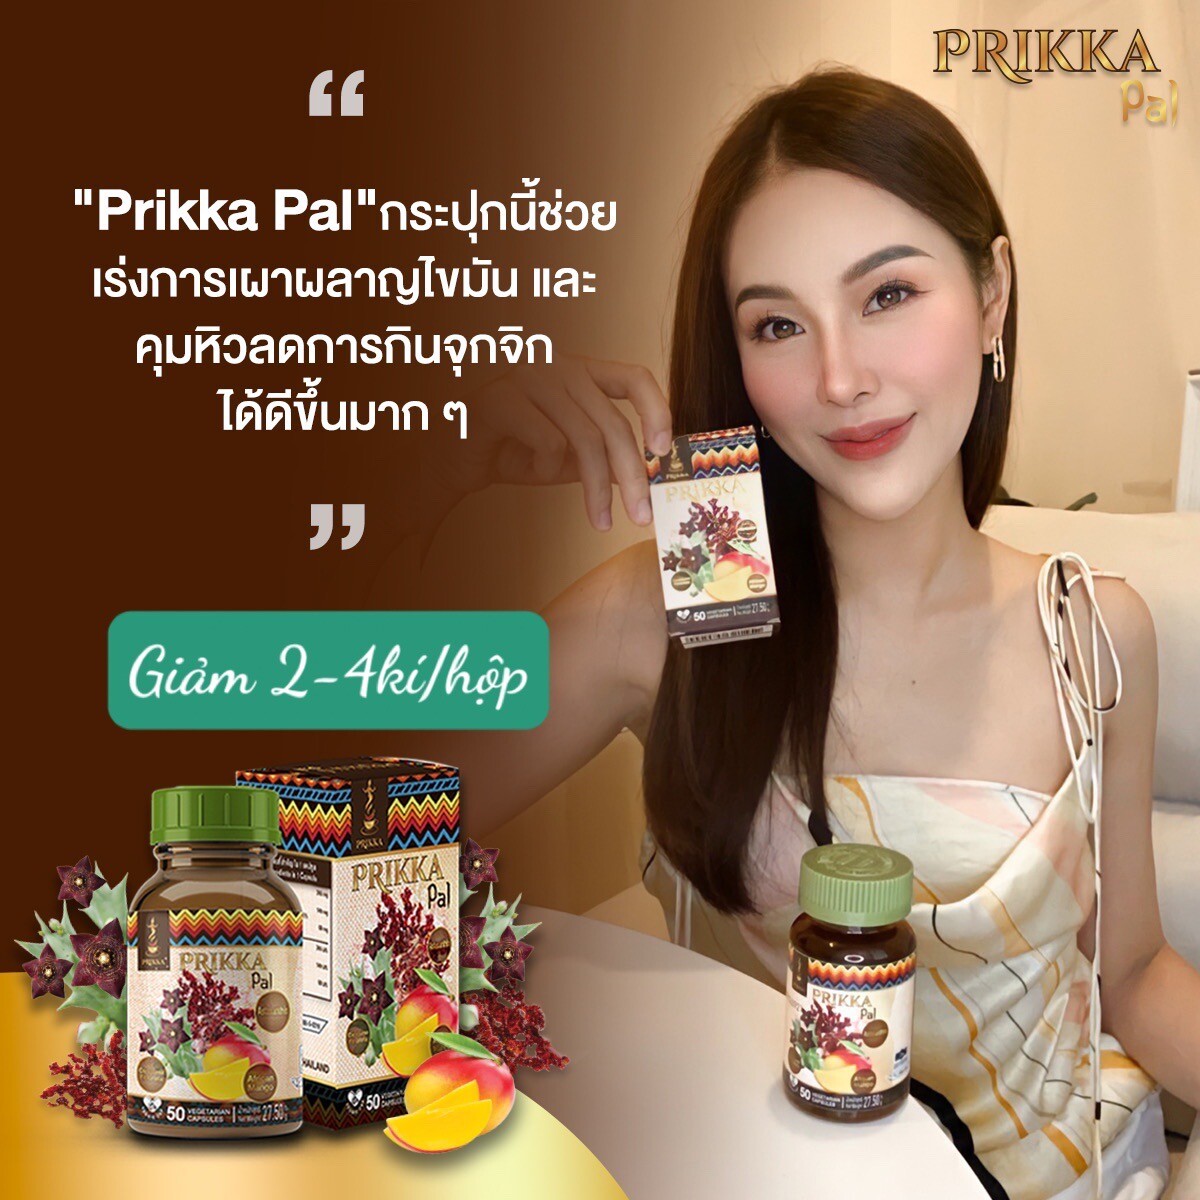 Viên uống thảo dược hỗ trợ giảm cân Prikka Pal Thailand